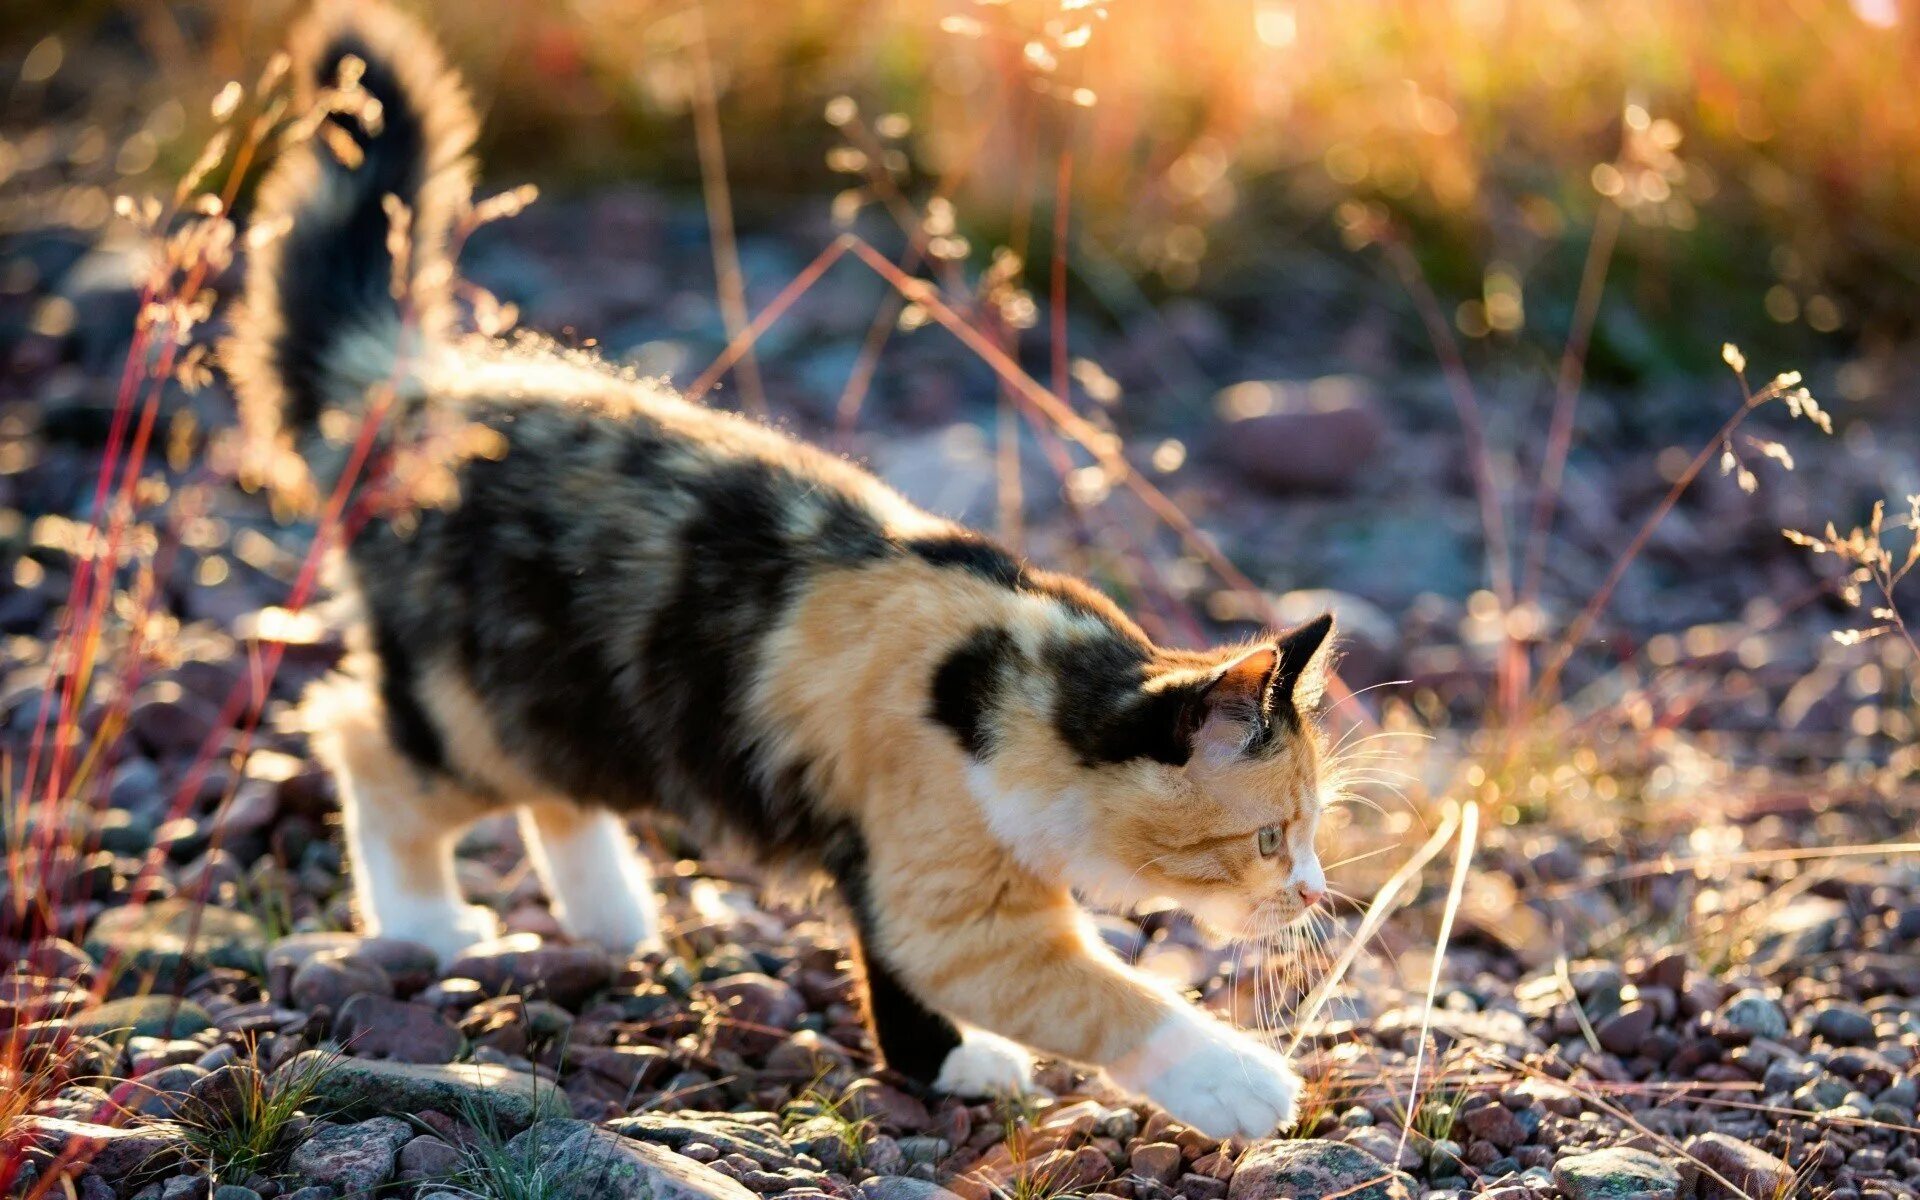 Звуки живых котов. Черепаховая кошка Калико. Трехшерстная кошка Калико. Американская жесткошерстная кошка трехцветная. Черепаховая кошка Калико на природе.